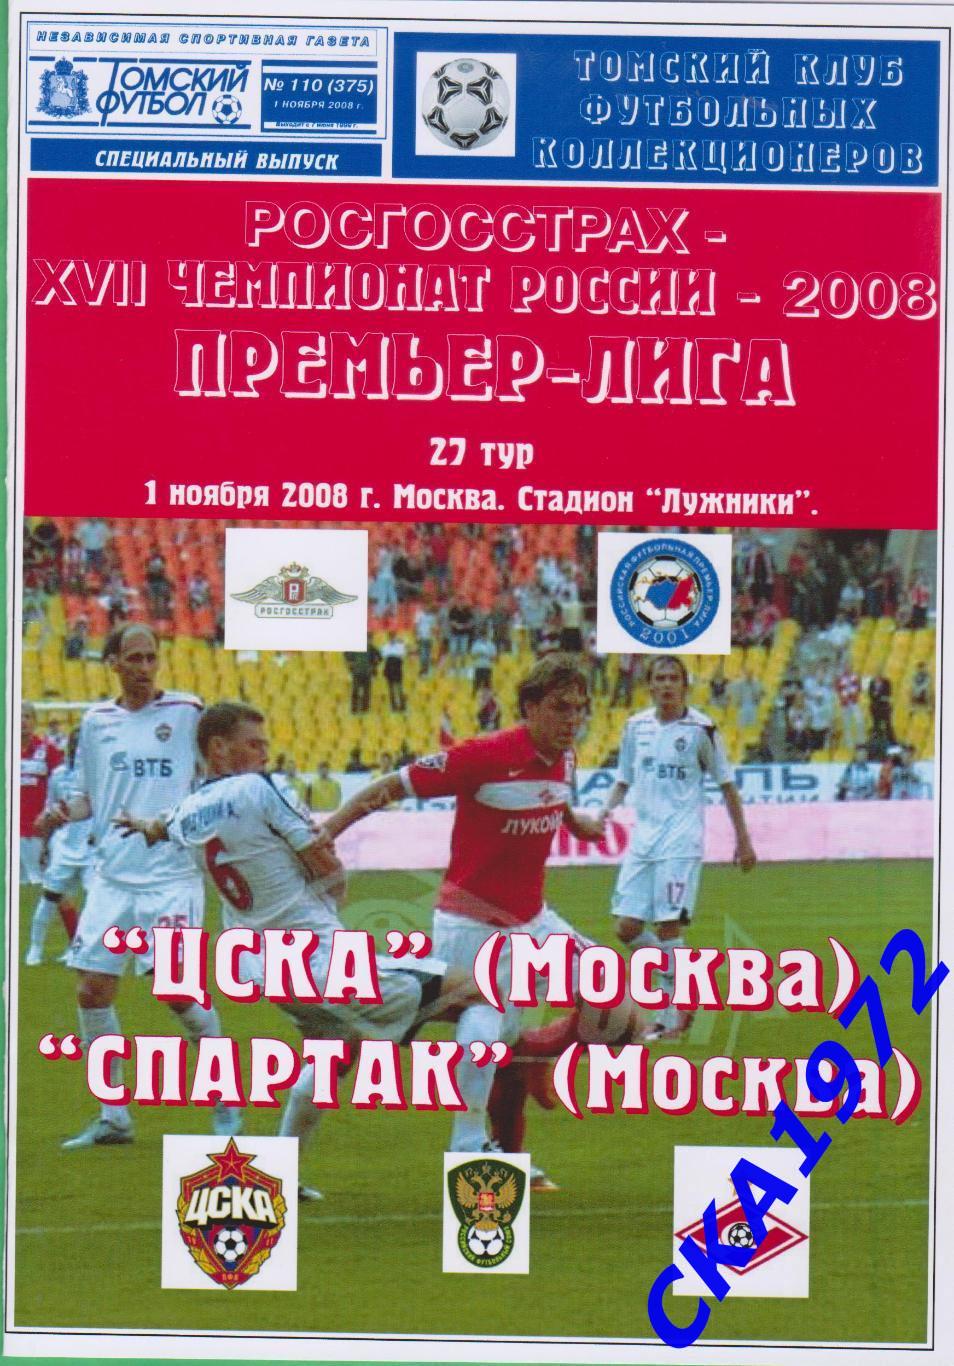 программа ЦСКА Москва - Спартак Москва 2008